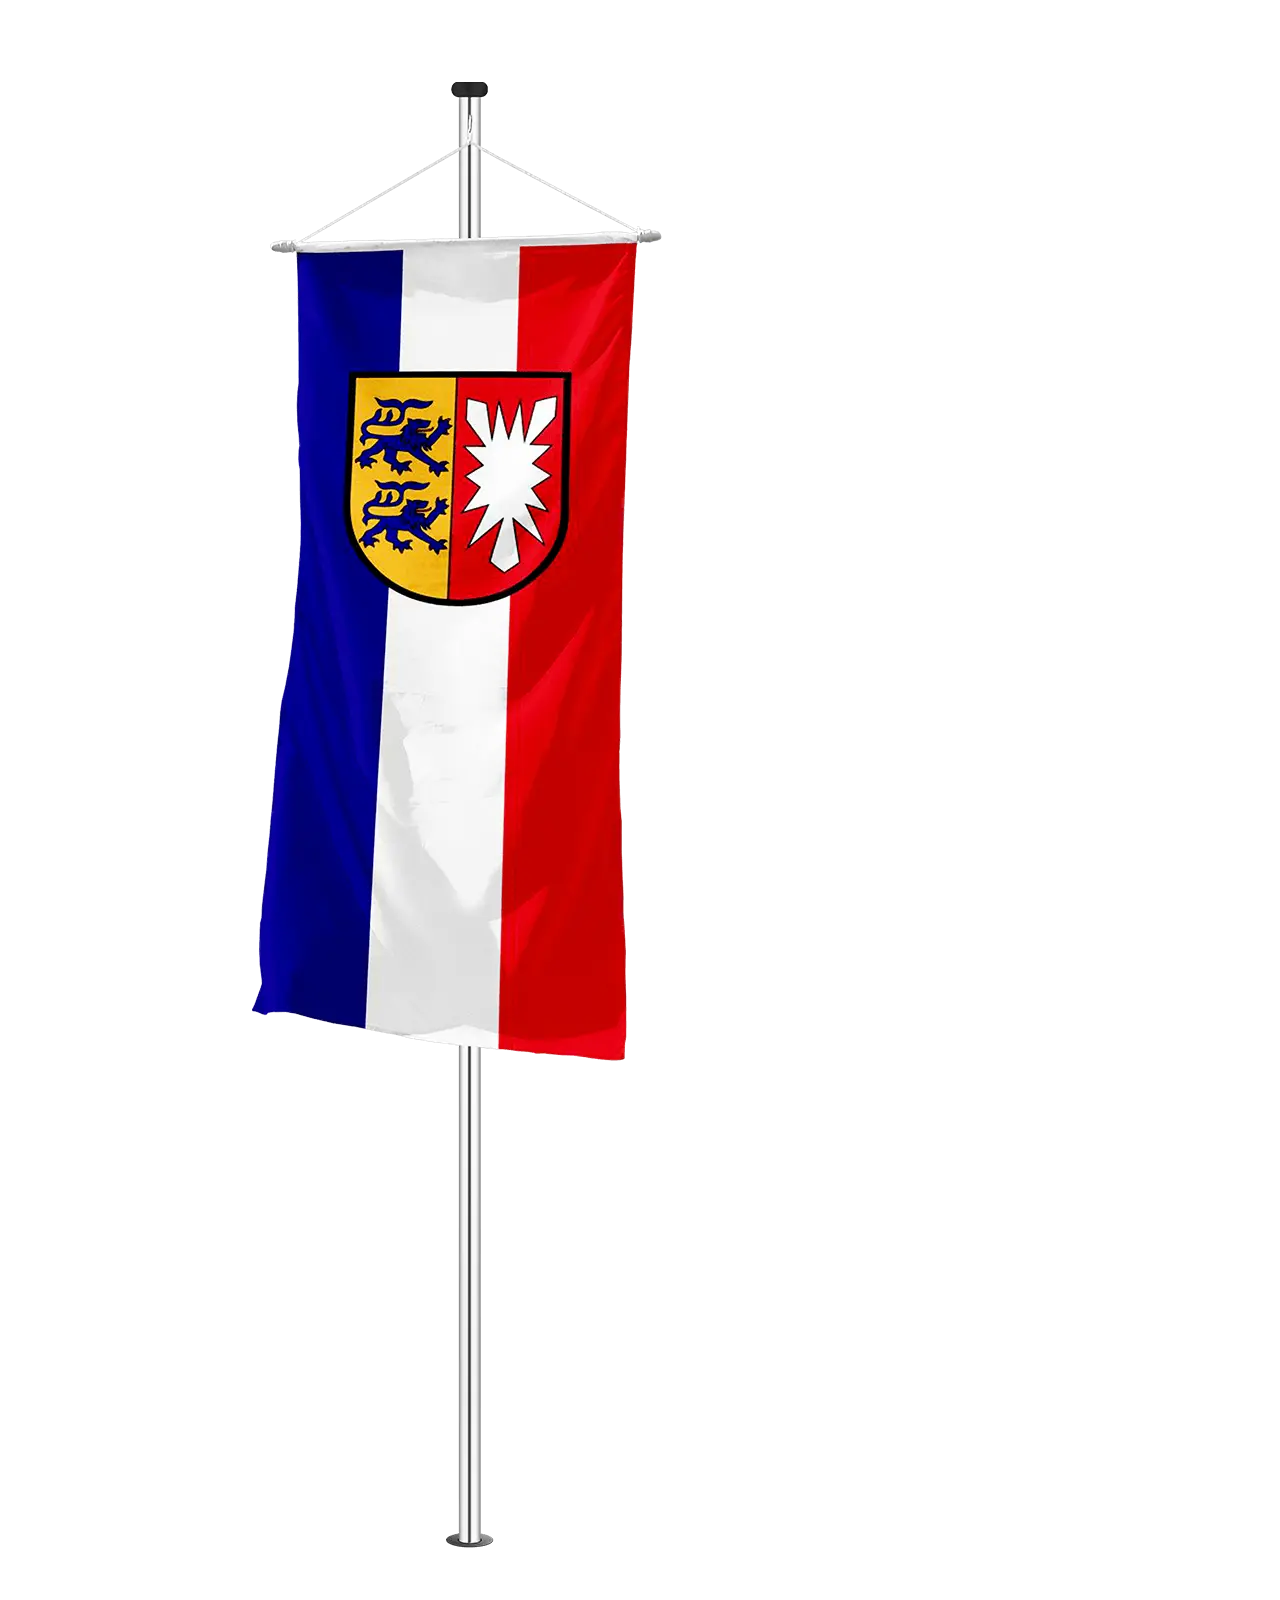 Bannerfahne Bundesland Schleswig Holstein Wappen